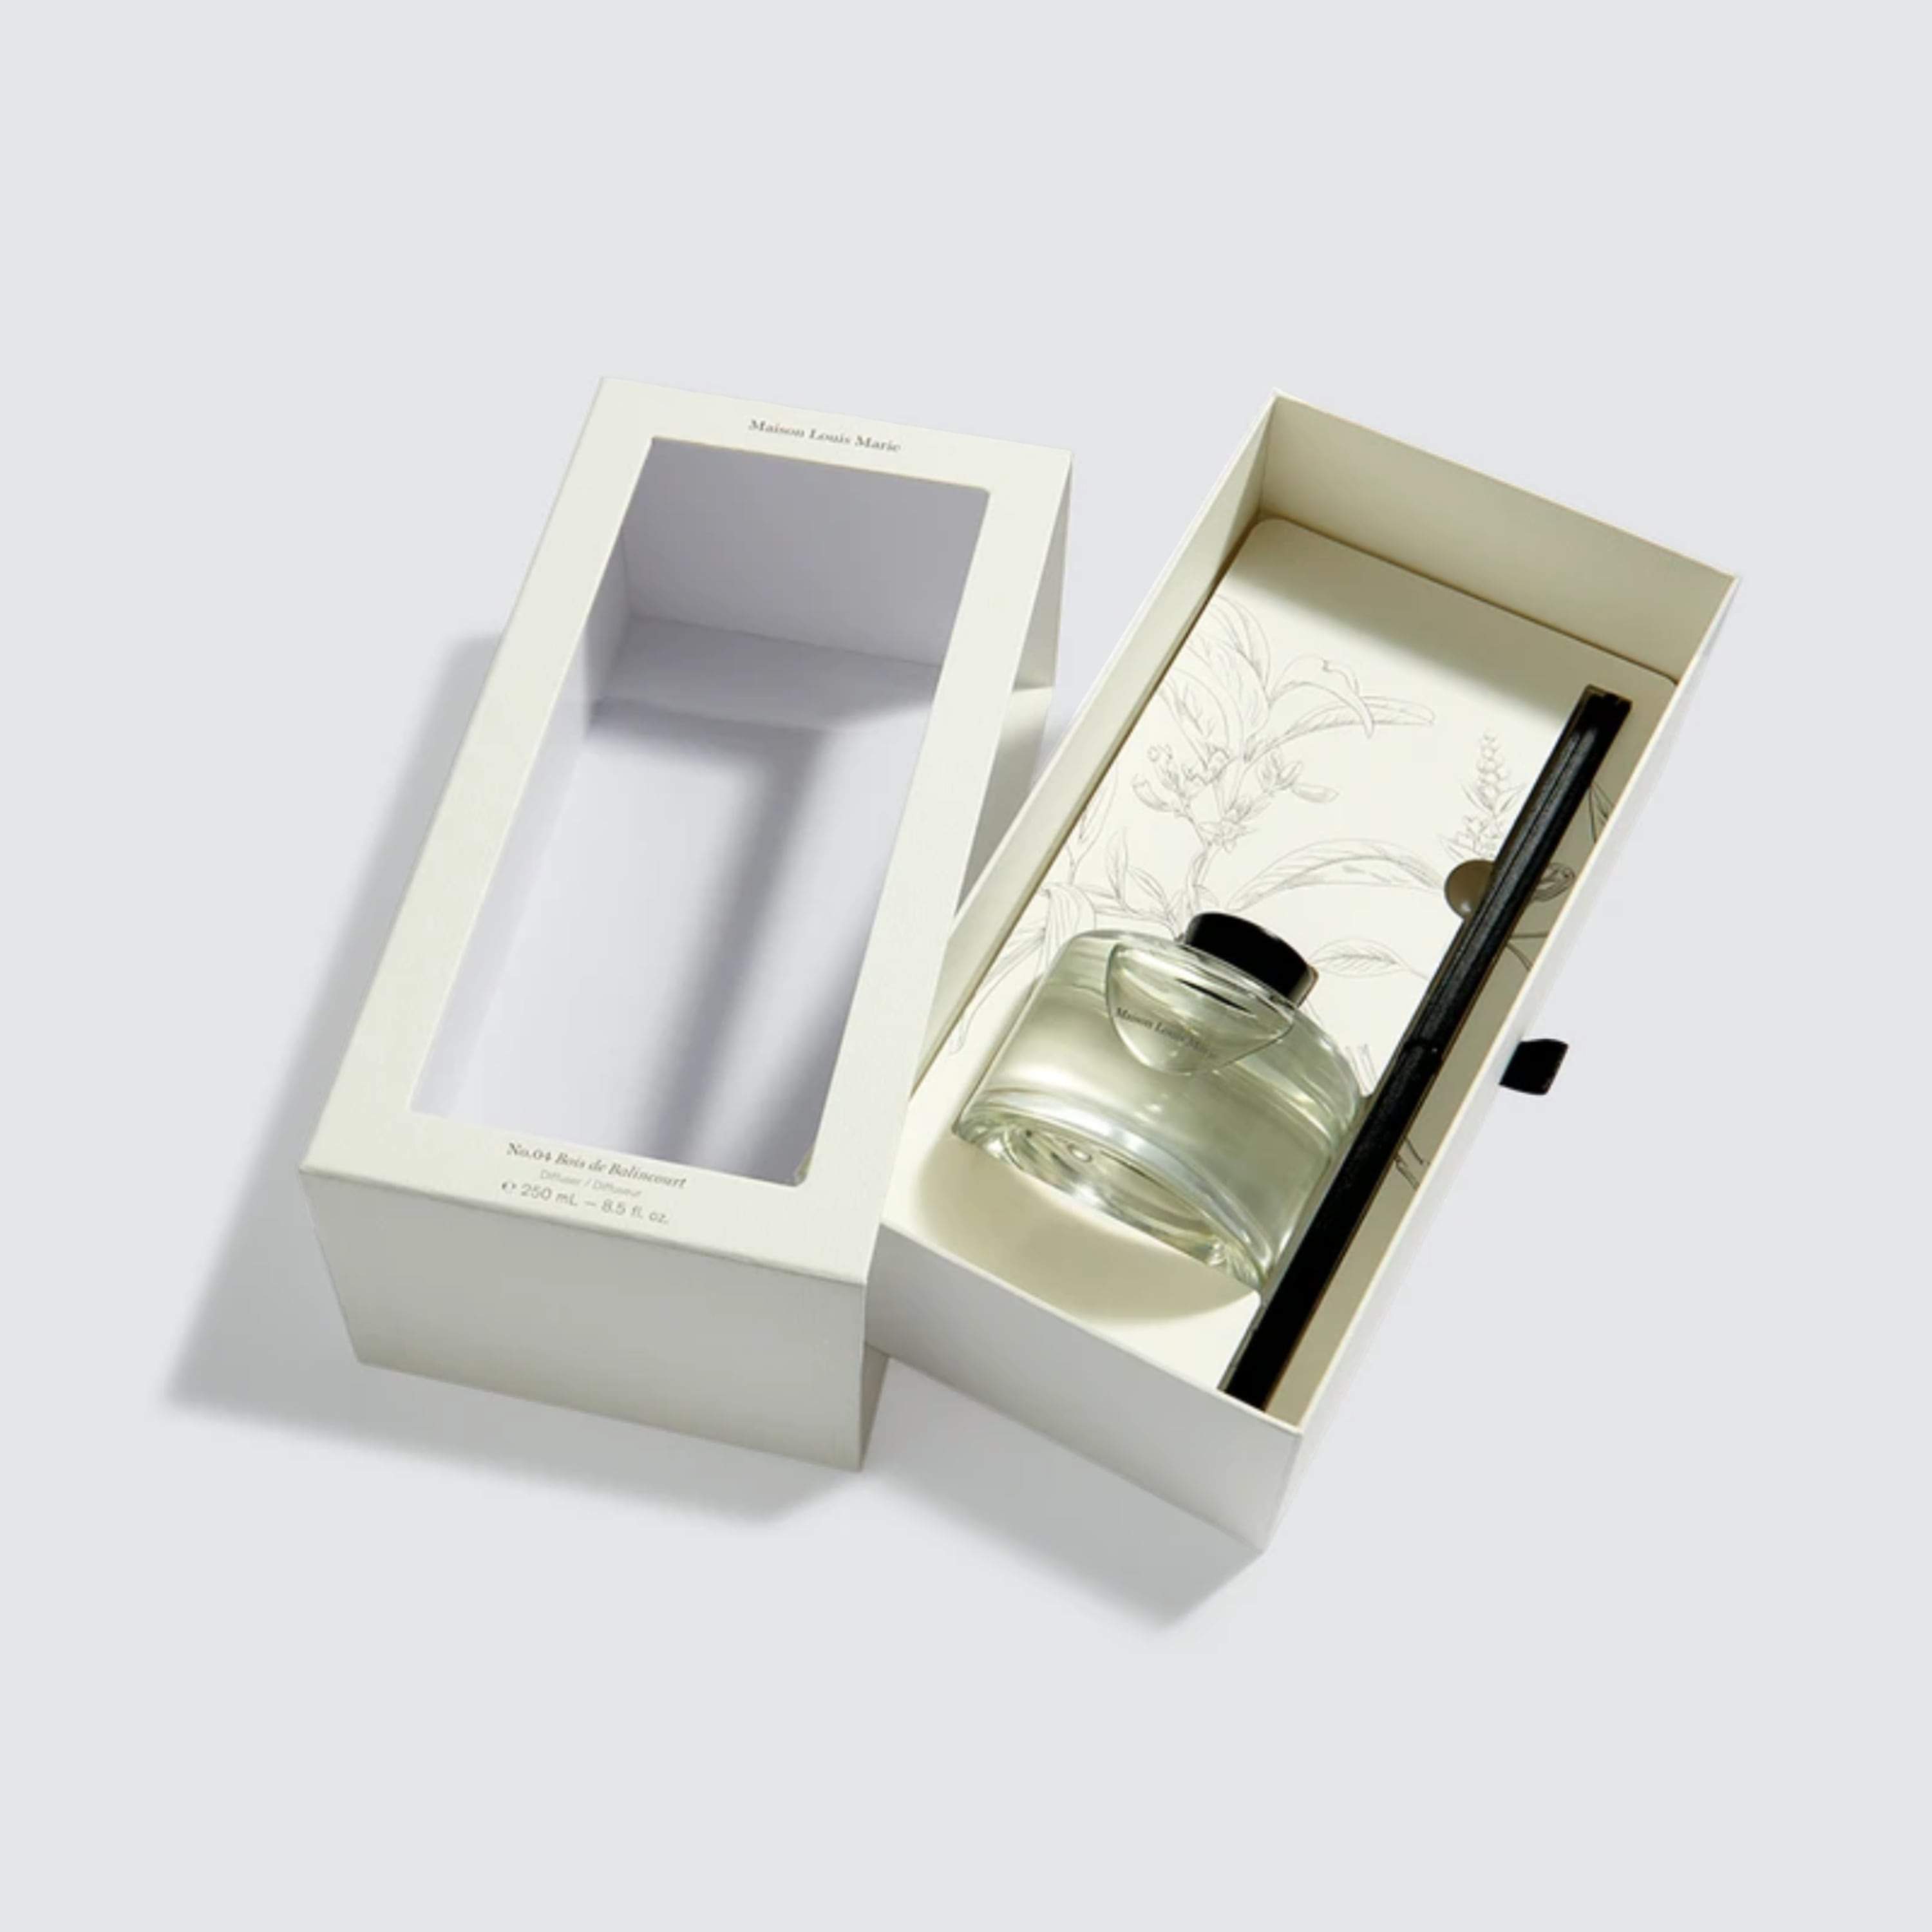 Maison Louis Marie No.04 Bois de Balincourt Perfume Oil Reviews 2023